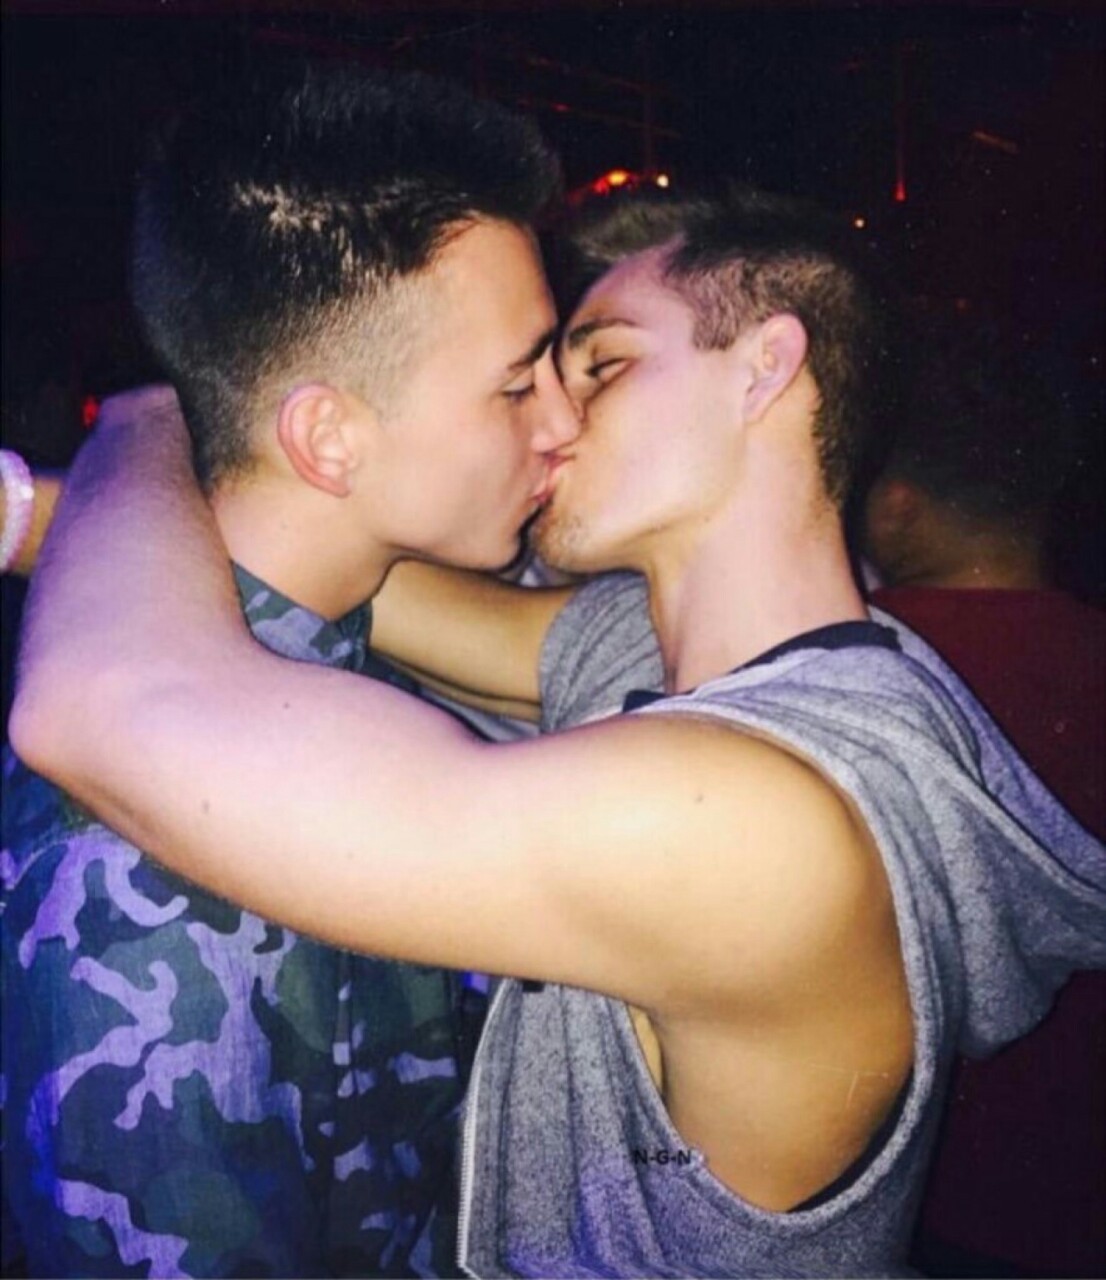 Boy gay teen kiss rad finds keith snooping 1